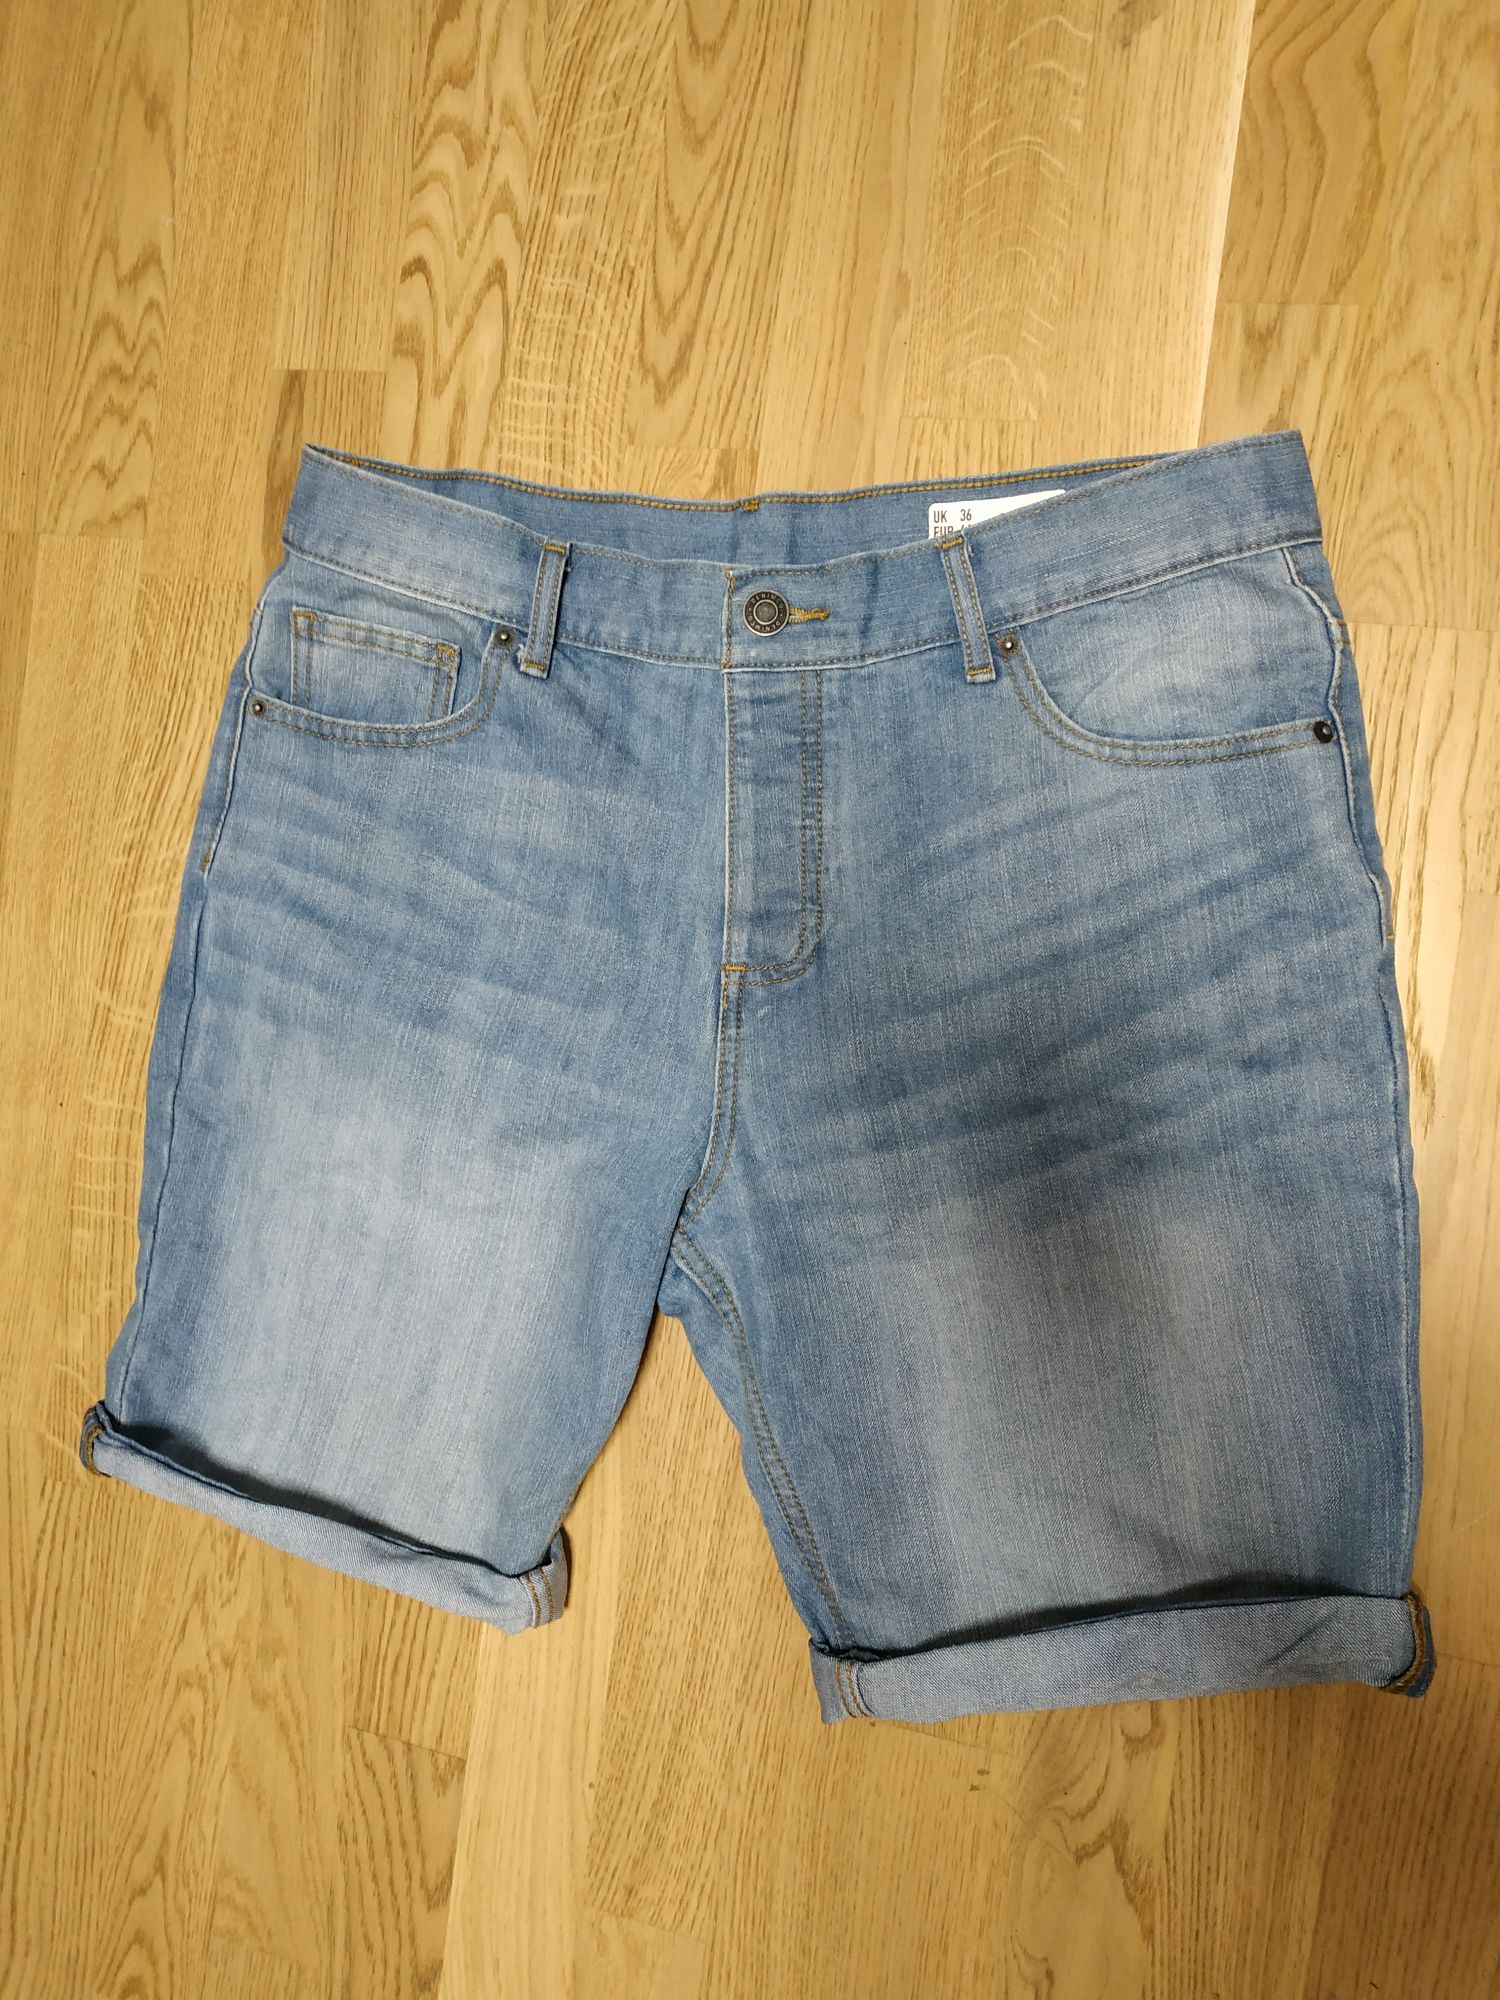 Krótkie męskie jeansowe spodenki. Denim Co. Rozmiar EUR 36.